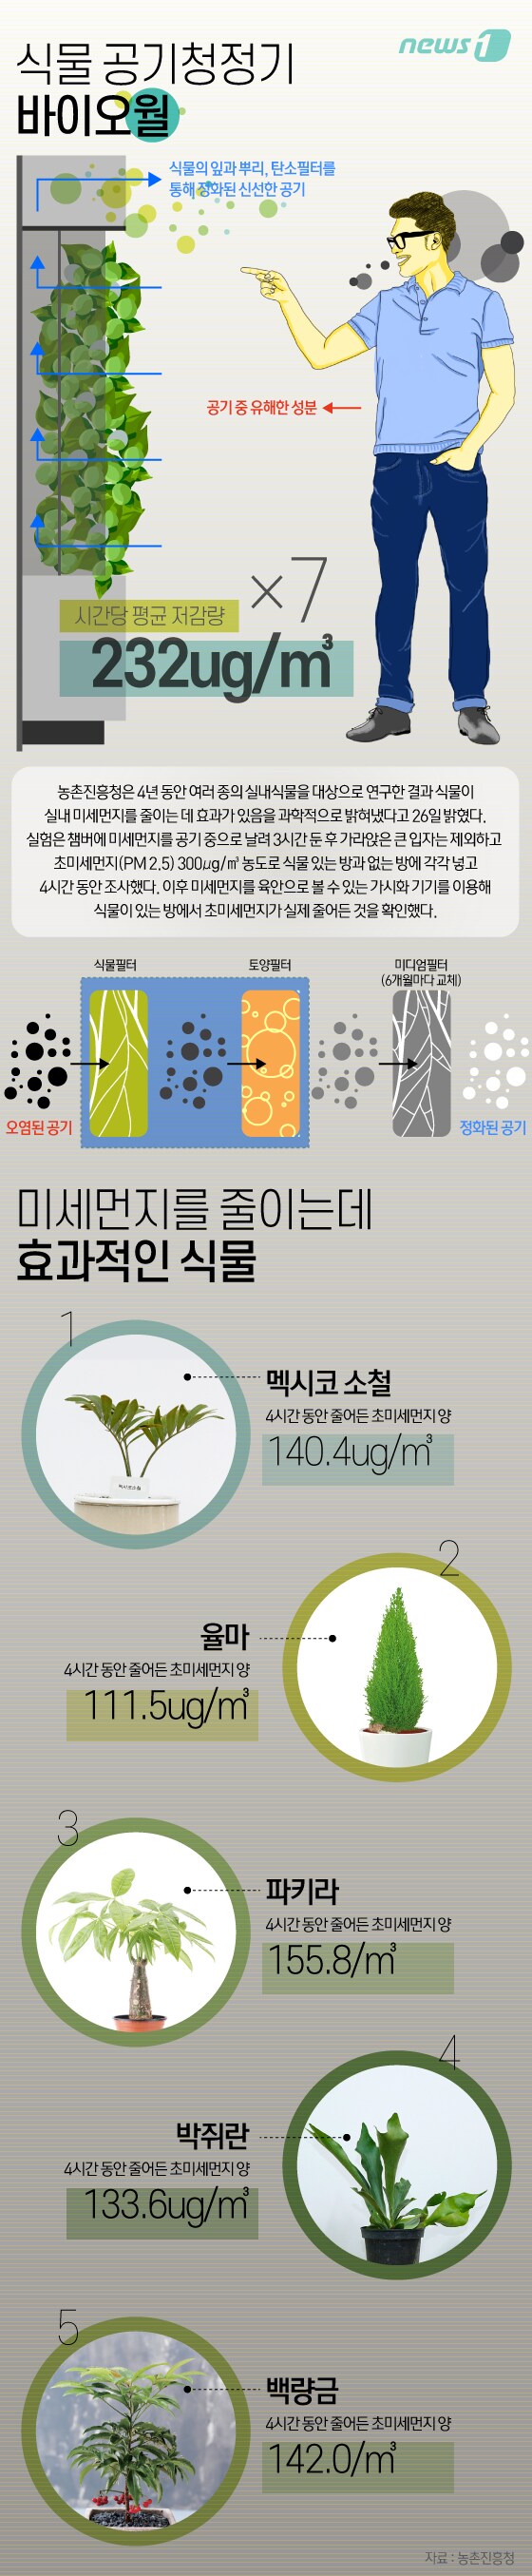 [그래픽뉴스] 거실에 화분 3~5개면 초미세먼지 20% 줄어